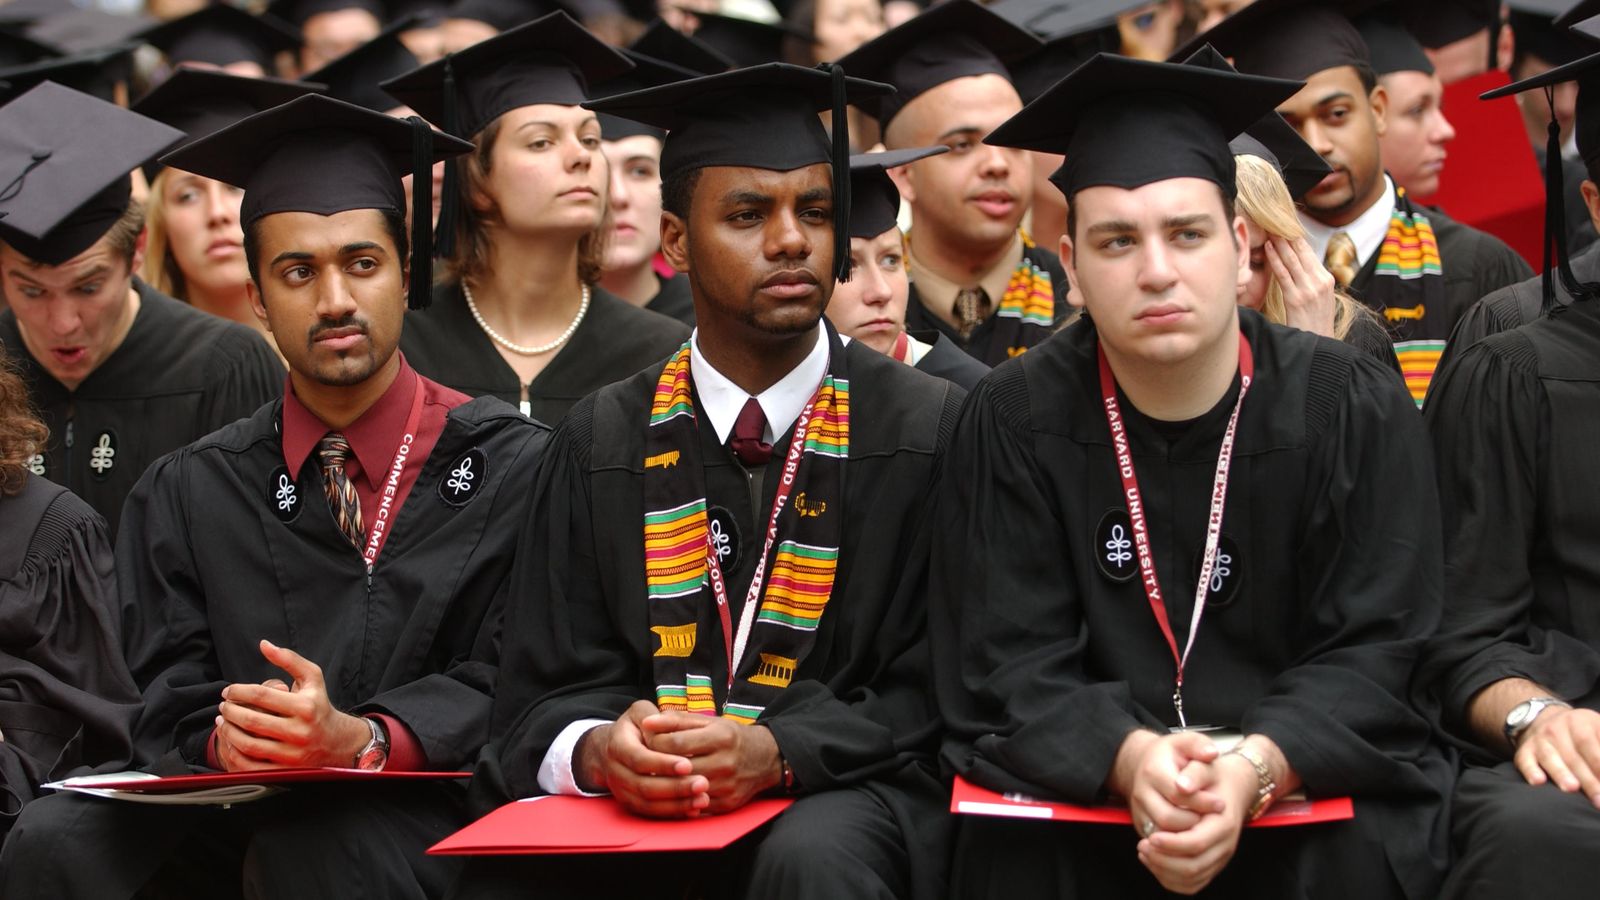 Foto: Estudiantes de Harvard durante la ceremonia de graduación de 2005. (Peter Turnley/Corbis)